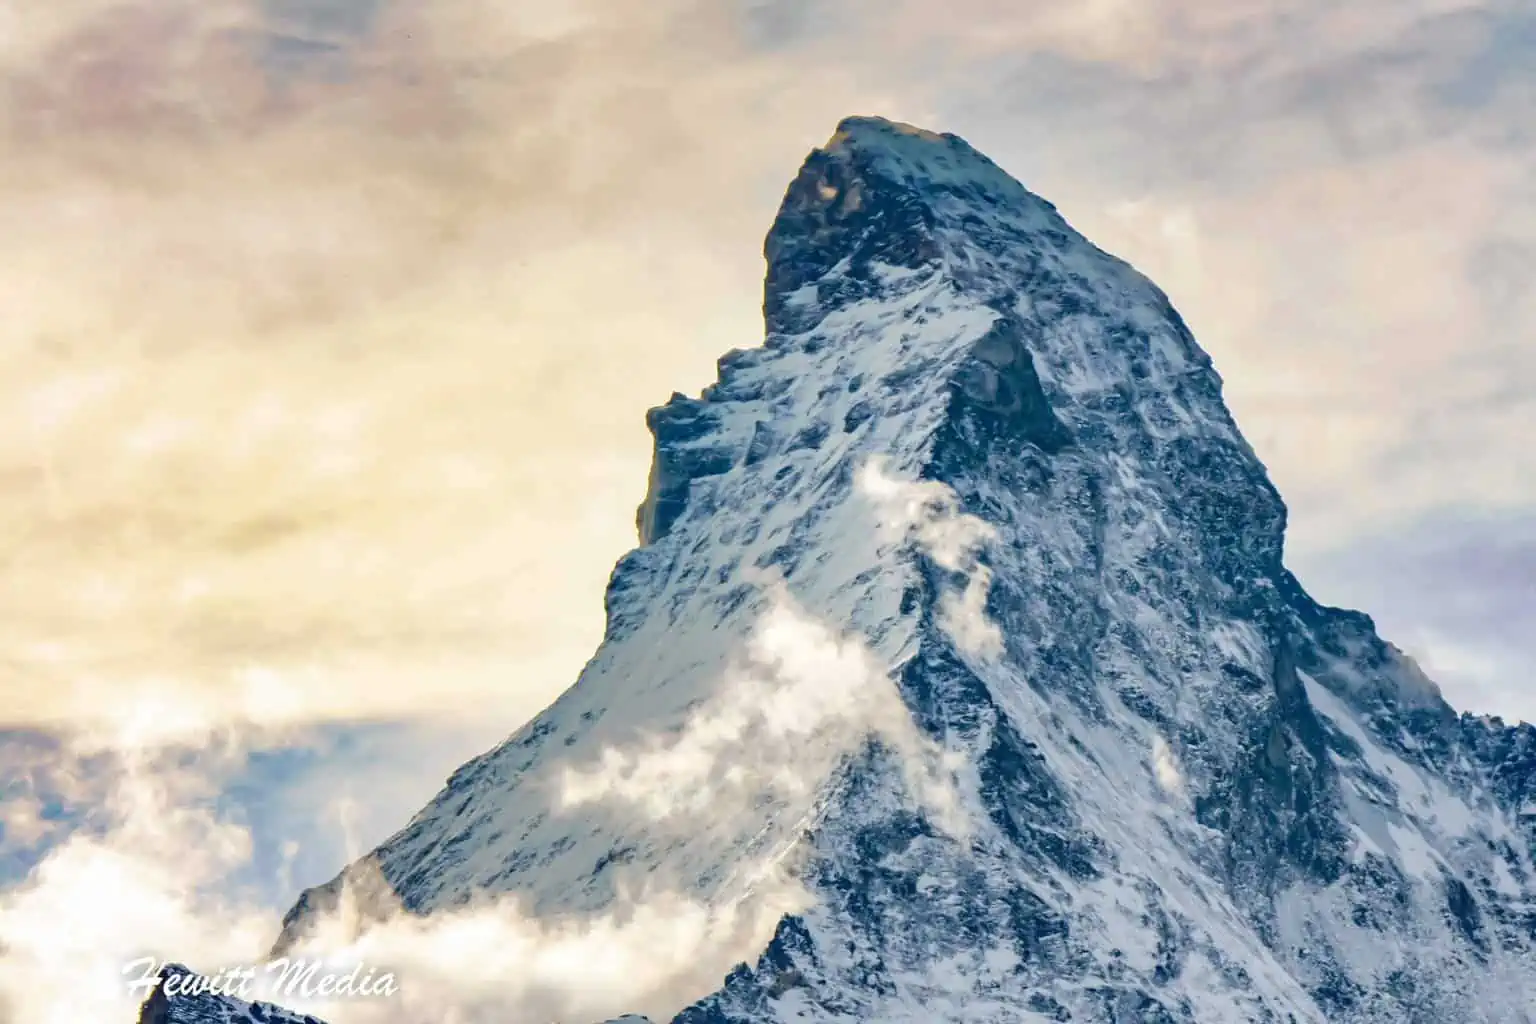 The Matterhorn in Zermatt